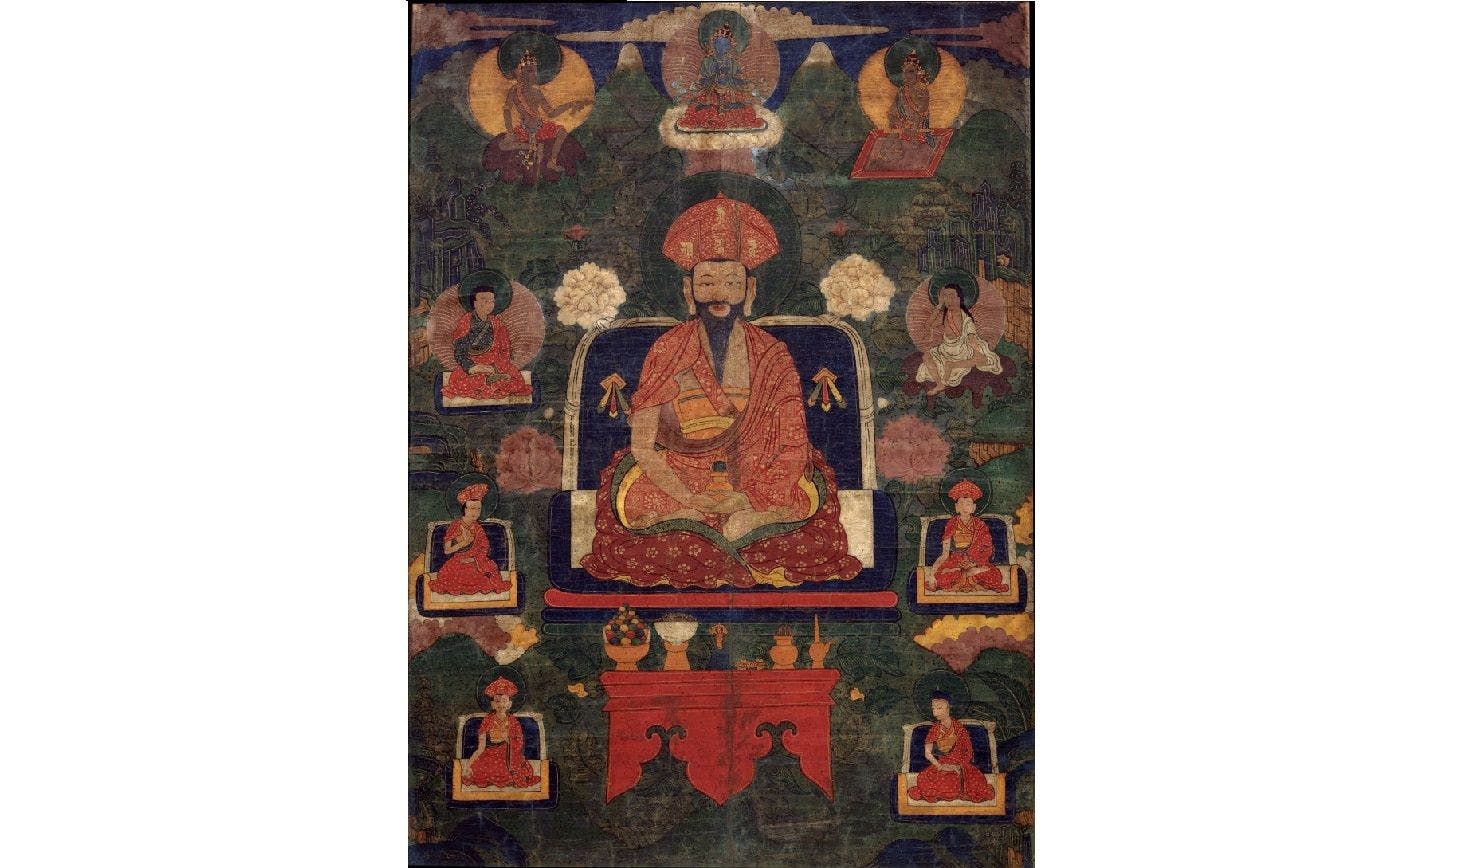 Painting of Ngawang Namgyal